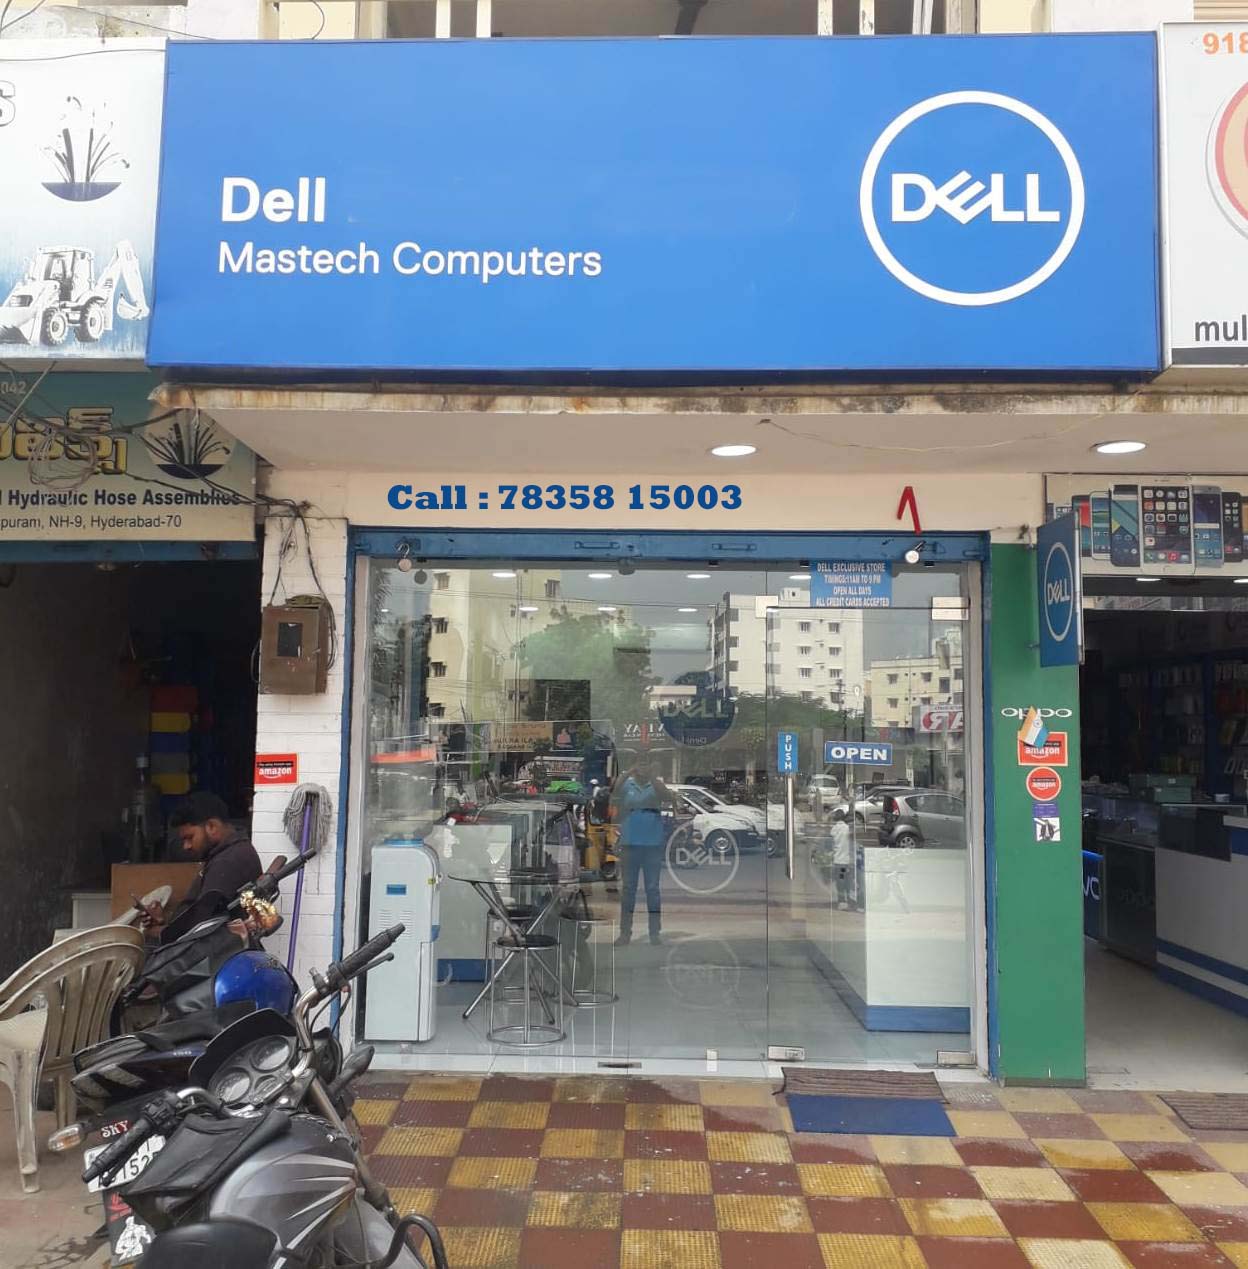 Dell service center